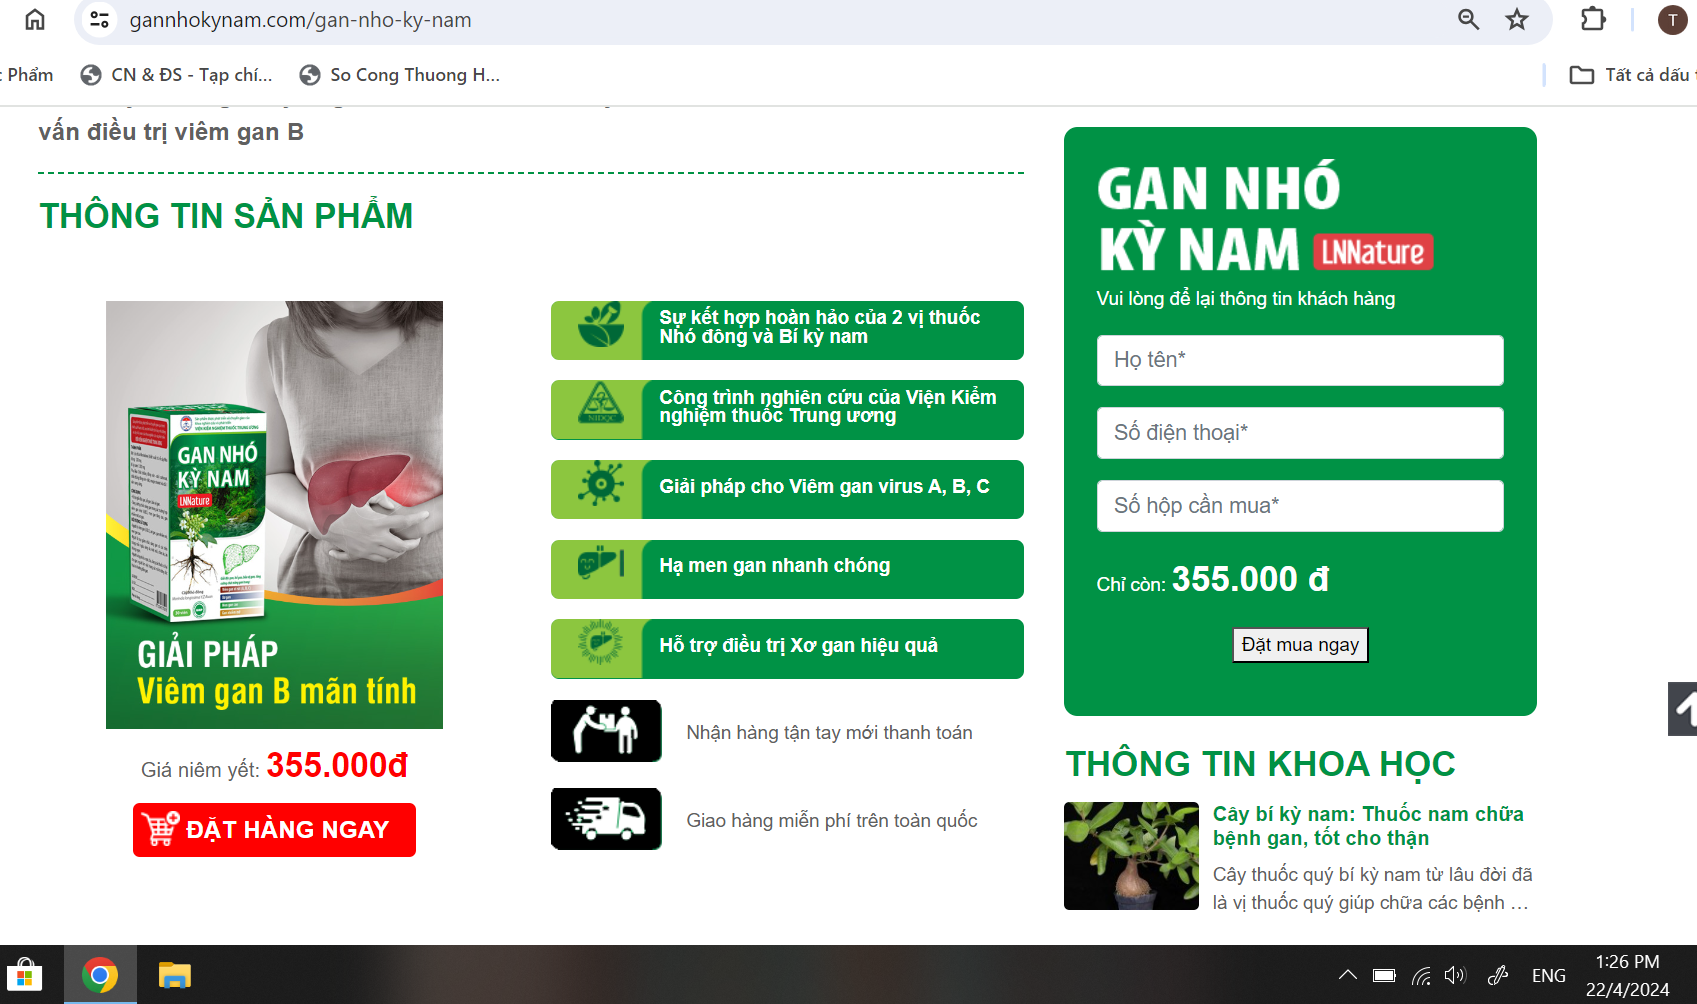 Website: gannhokynam.com có nhiều quảng cáo, giới thiệu sản phẩm sử dụng từ ngữ gây hiểu lầm là thuốc chữa bệnh